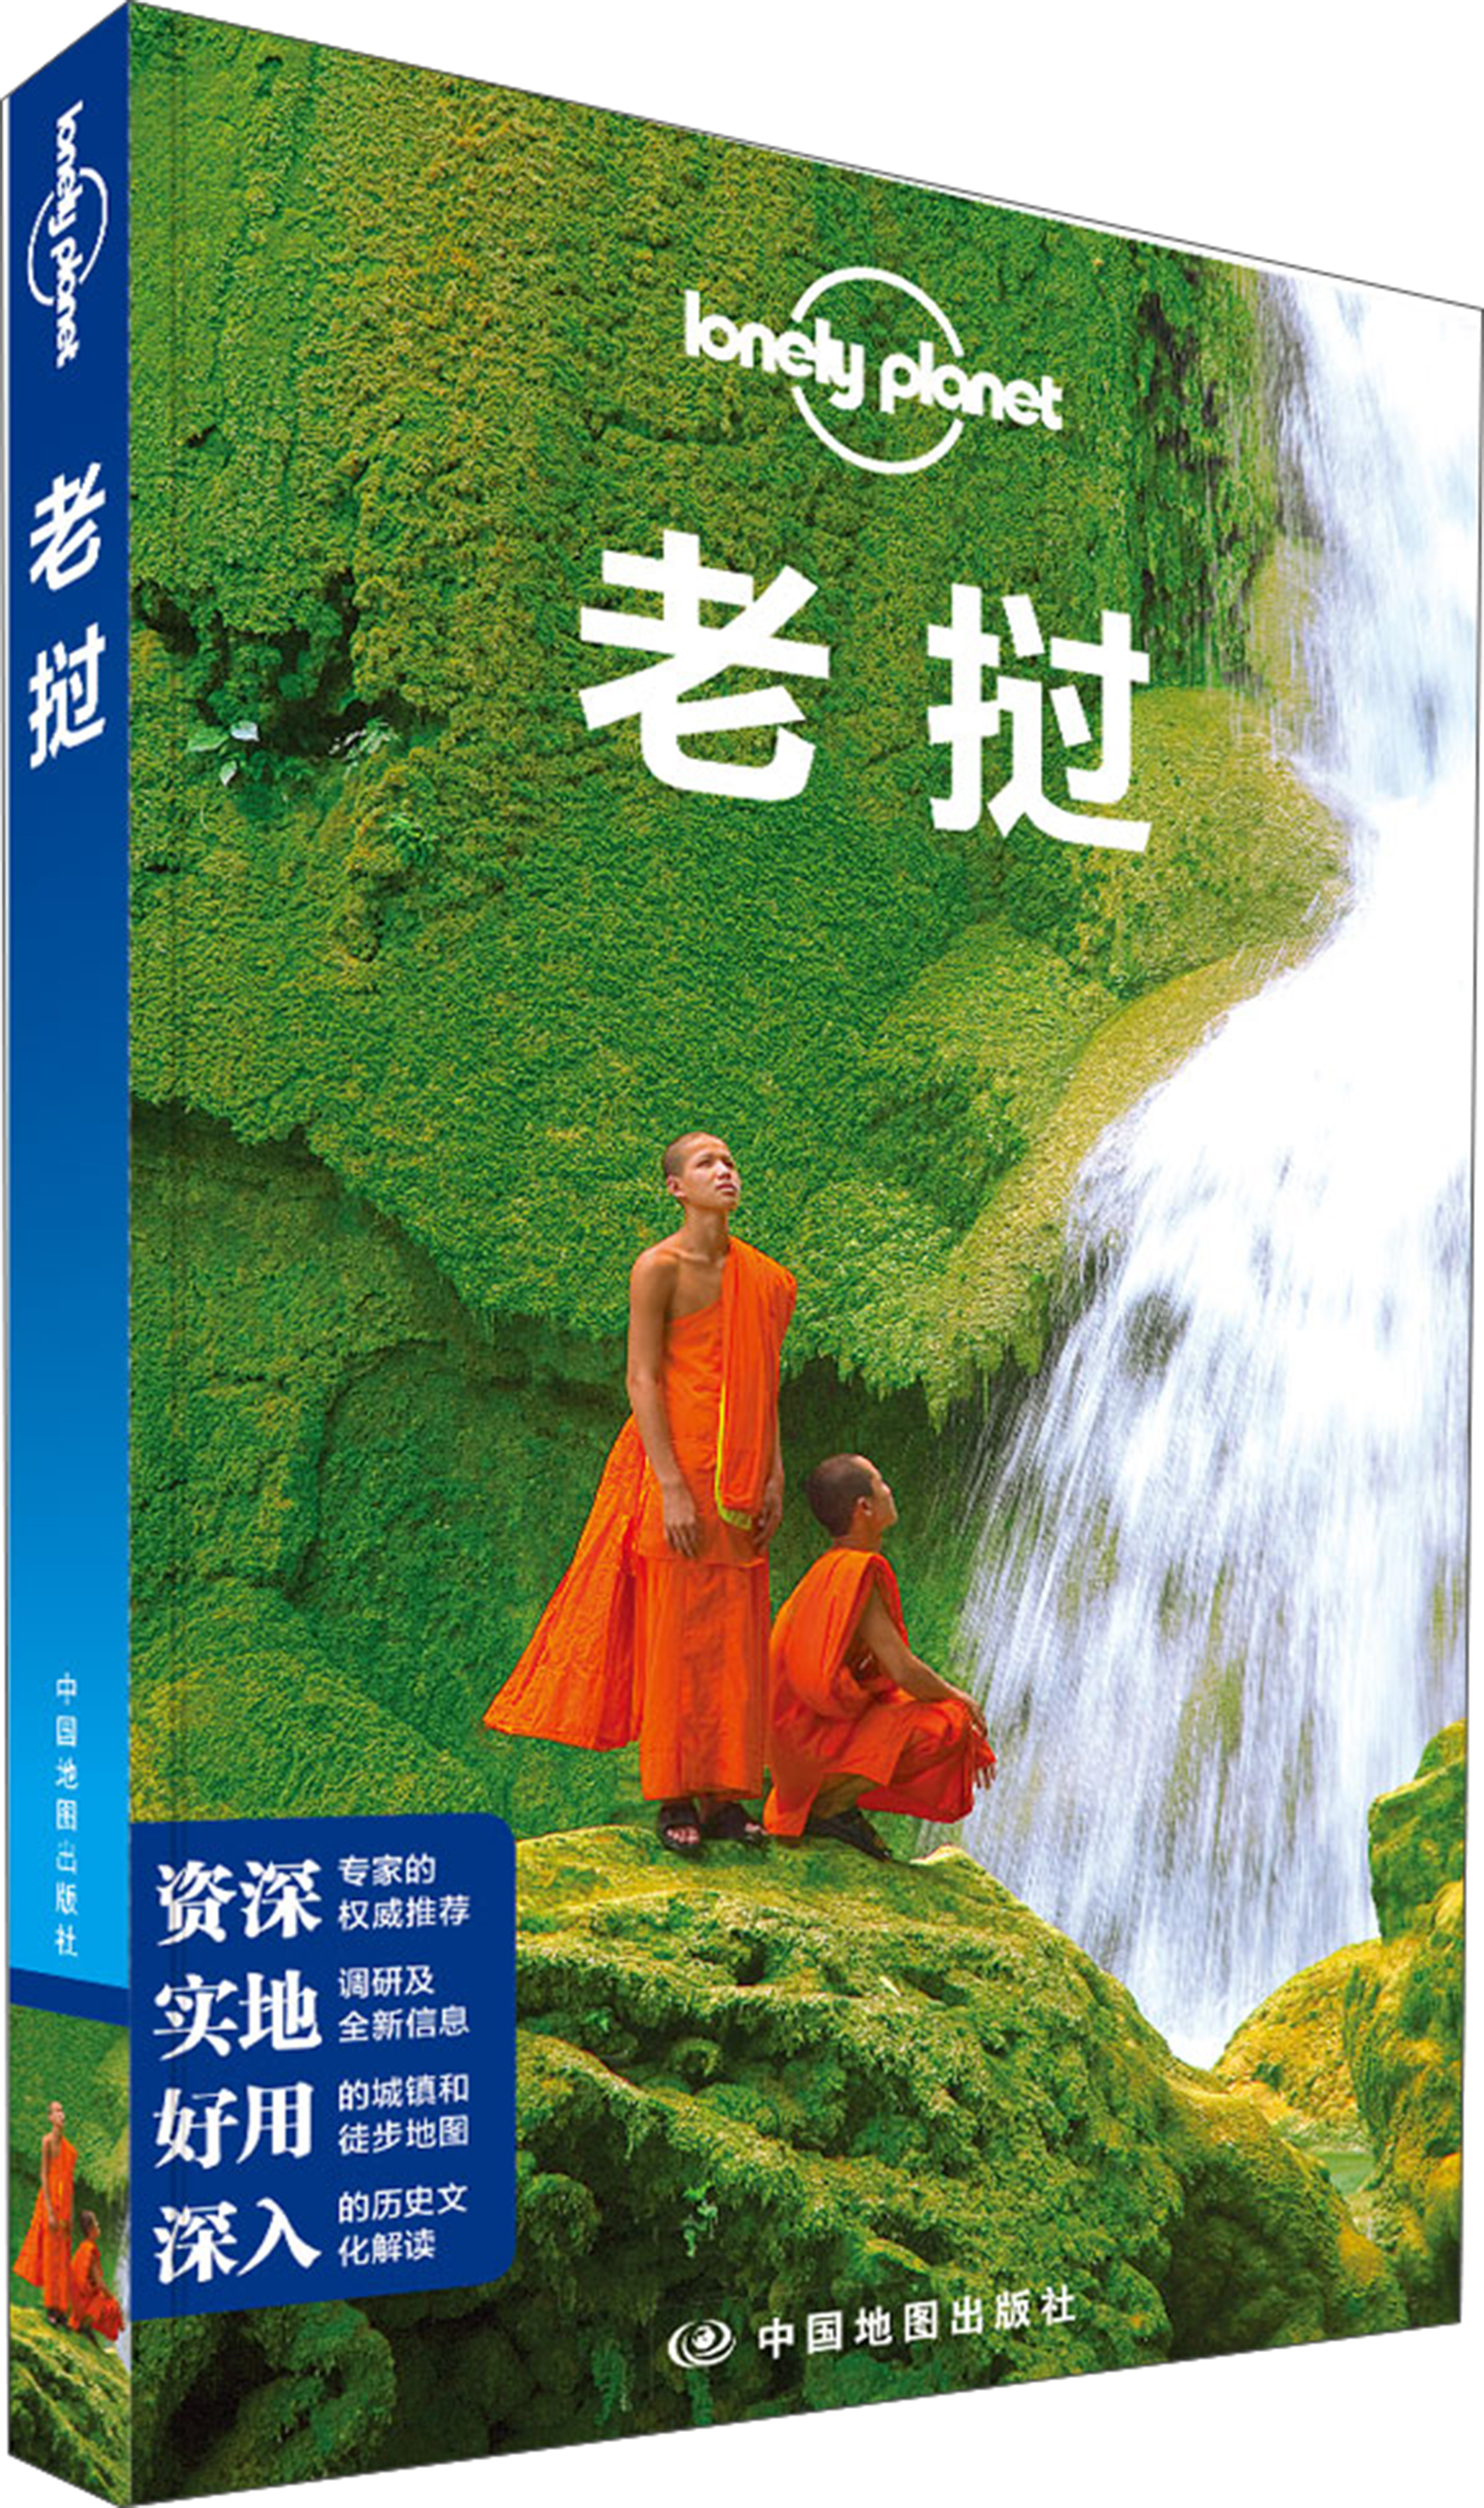 孤独星球Lonely Planet旅行指南系列：老挝 azw3格式下载